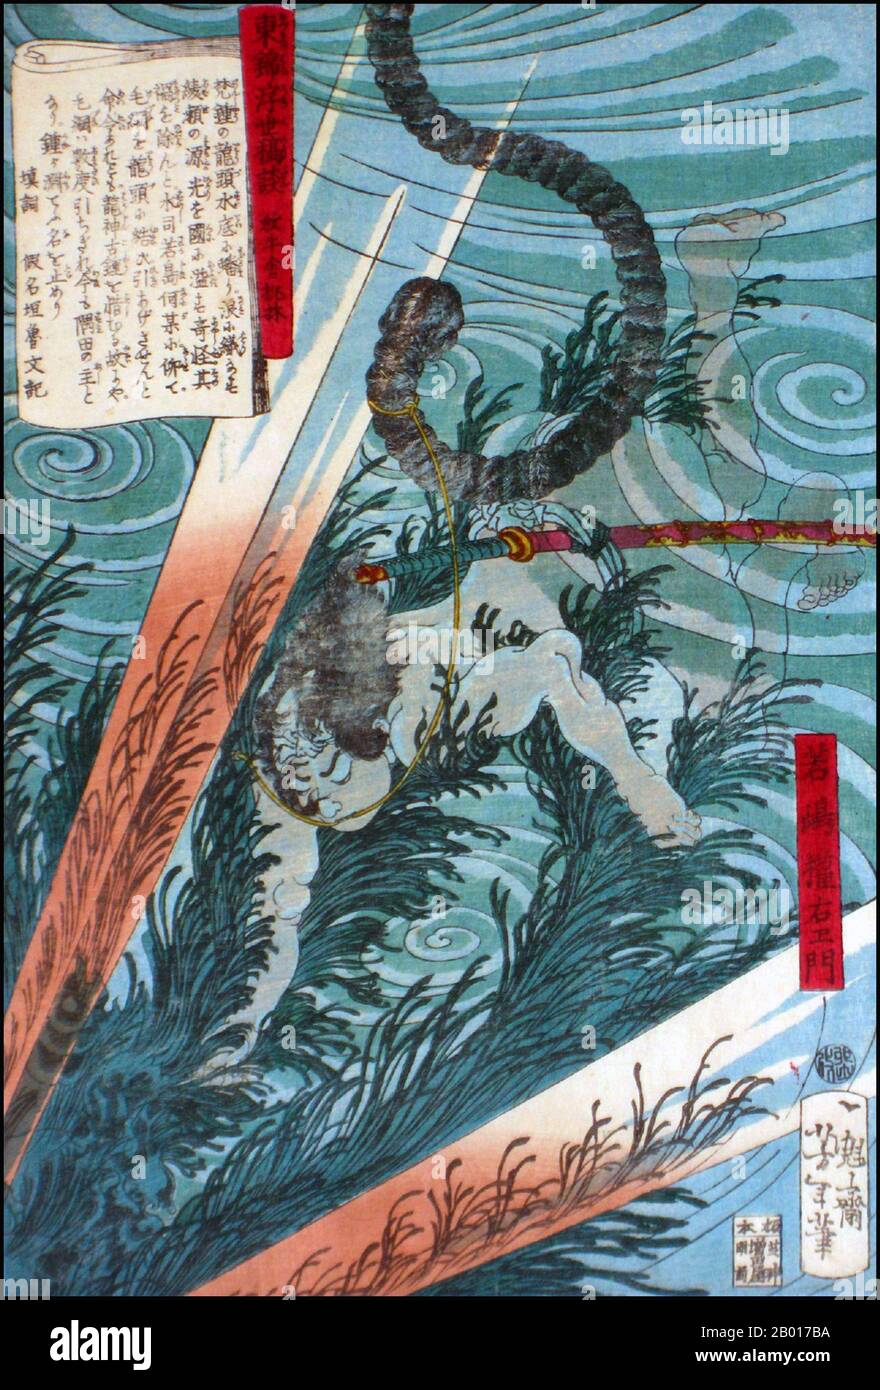 Japan: „Wakashima Gonemon Swimming Underwater“. Ukiyo-e Holzschnitt von Tsukioka Yoshitoshi (1839. - 9. Juni 1892), c. 1867-1868. Tsukioka Yoshitoshi, auch Taiso Yoshitoshi genannt, war ein japanischer Künstler. Er ist weithin als der letzte große Meister des japanischen Holzschnitts Ukiyo-e anerkannt. Er gilt zudem als einer der größten Innovatoren der Form. Seine Karriere umfasste zwei Epochen – die letzten Jahre des feudalen Japans und die ersten Jahre des modernen Japans nach der Meiji-Restauration. Stockfoto